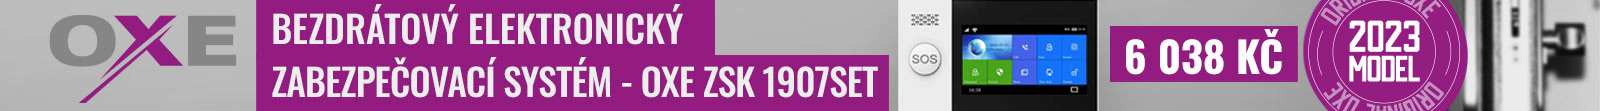 OXE ZSK 1907SET - Bezdrátový elektronický zabezpečovací systém